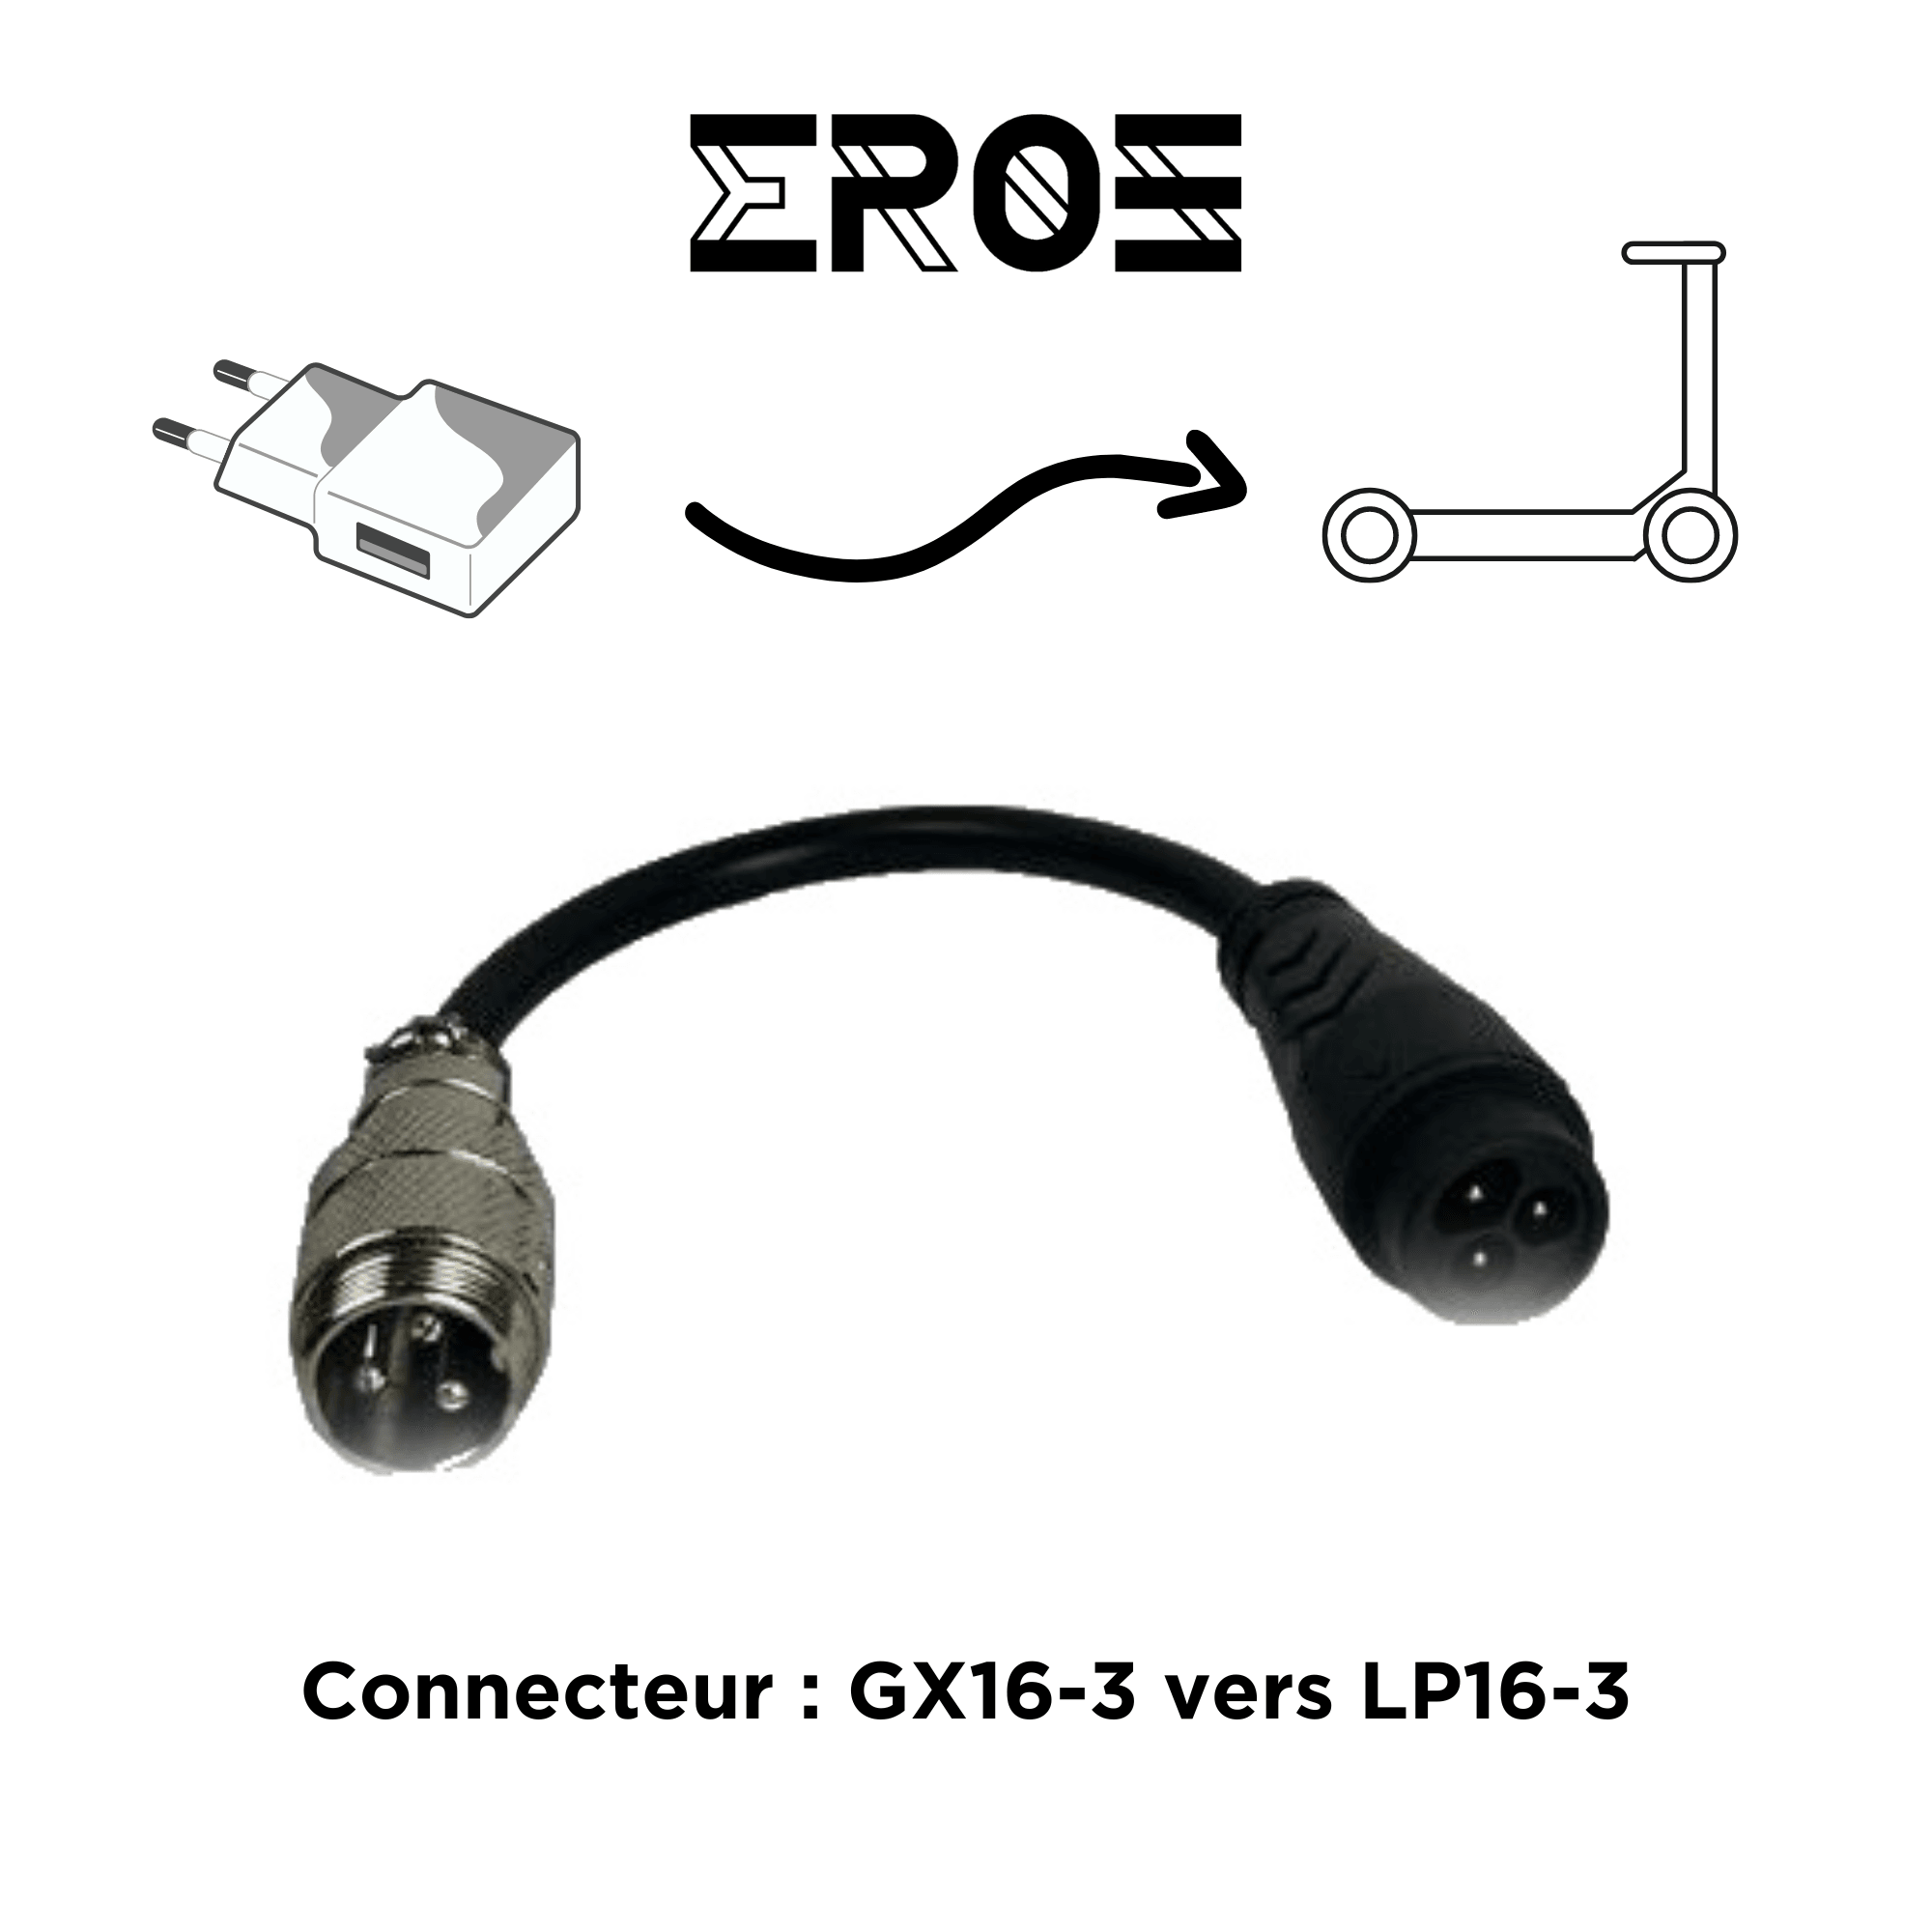 adaptateur eroz chargeur gx16-3 vers lp16-3 pour trottinette electrique.